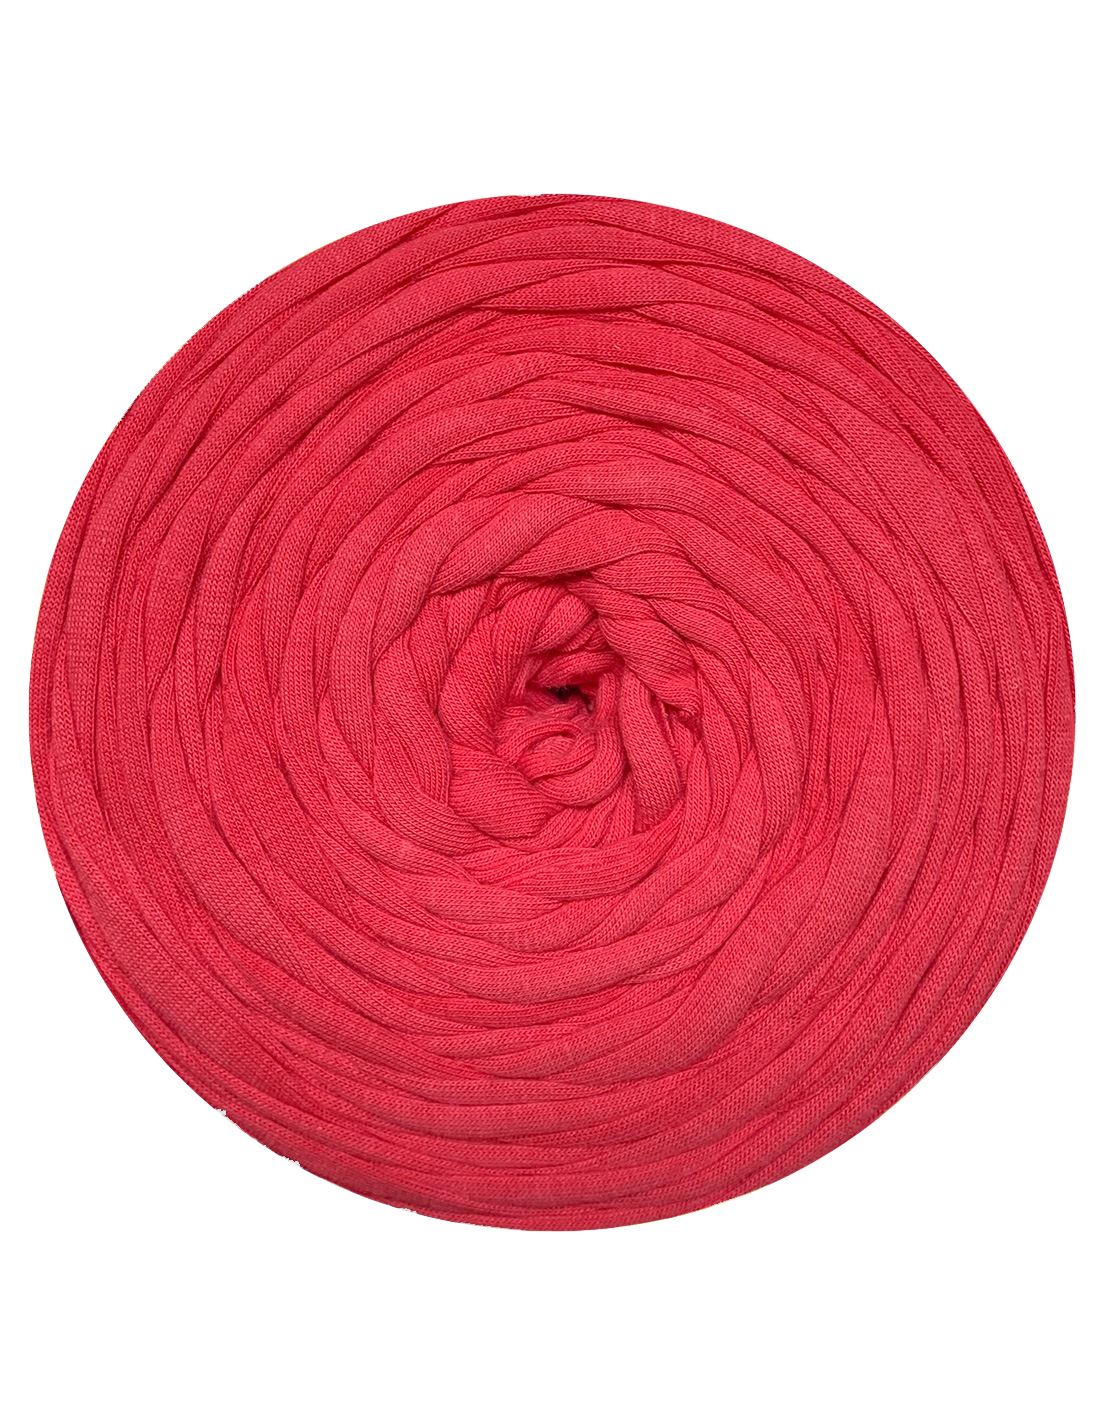 Bold punch pink t-shirt yarn (100-120m)